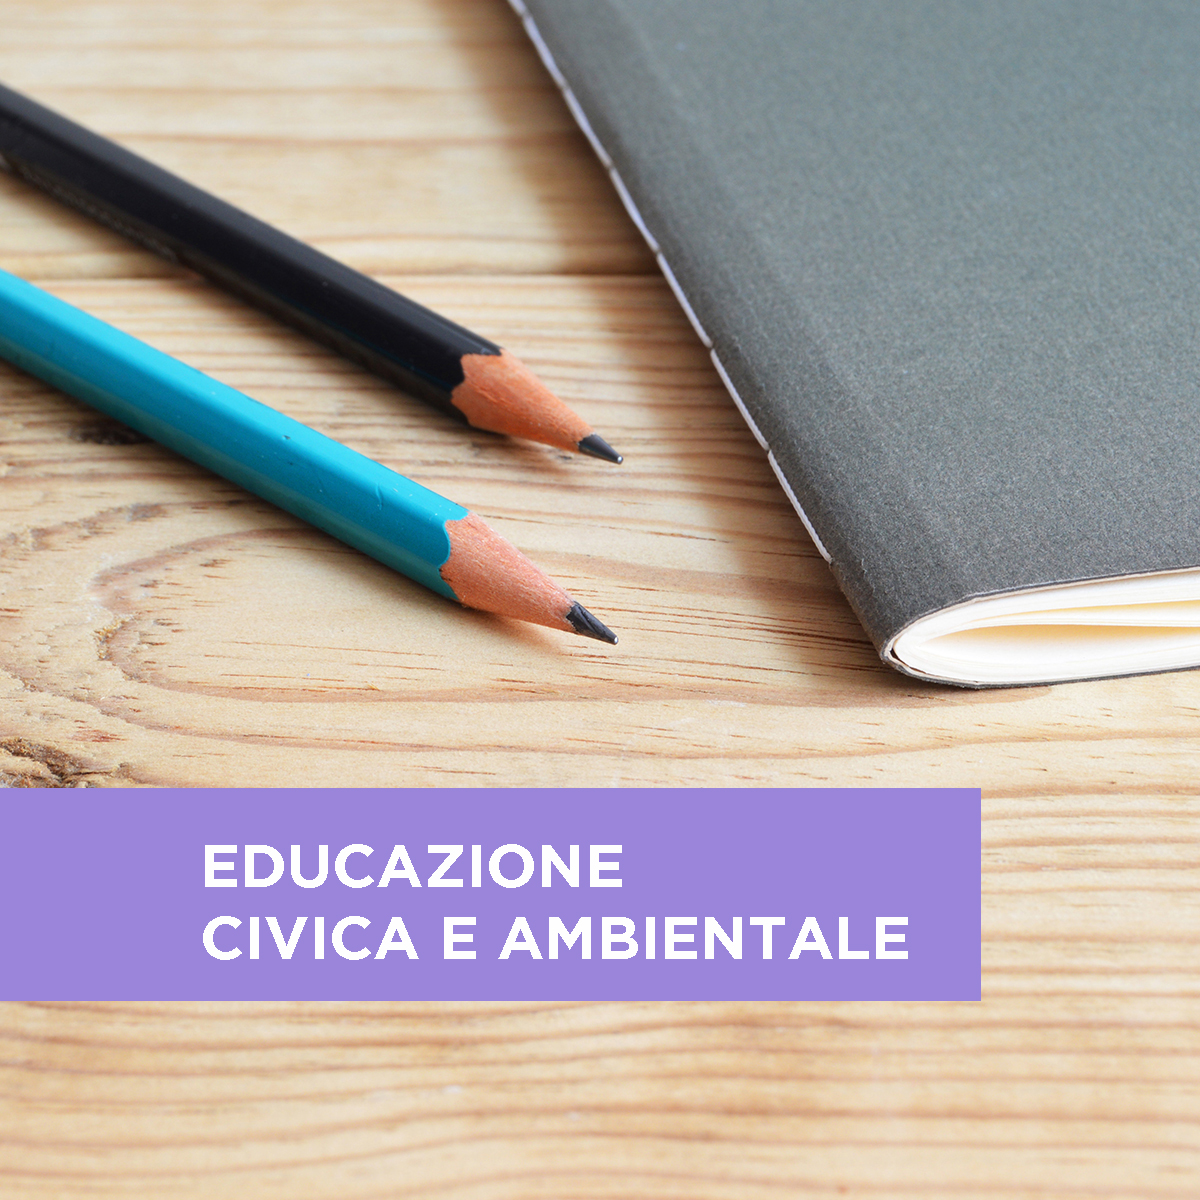 L’insegnamento dell’educazione civica secondo la legge 92/2019 - Curricolo, organizzazione e valutazione